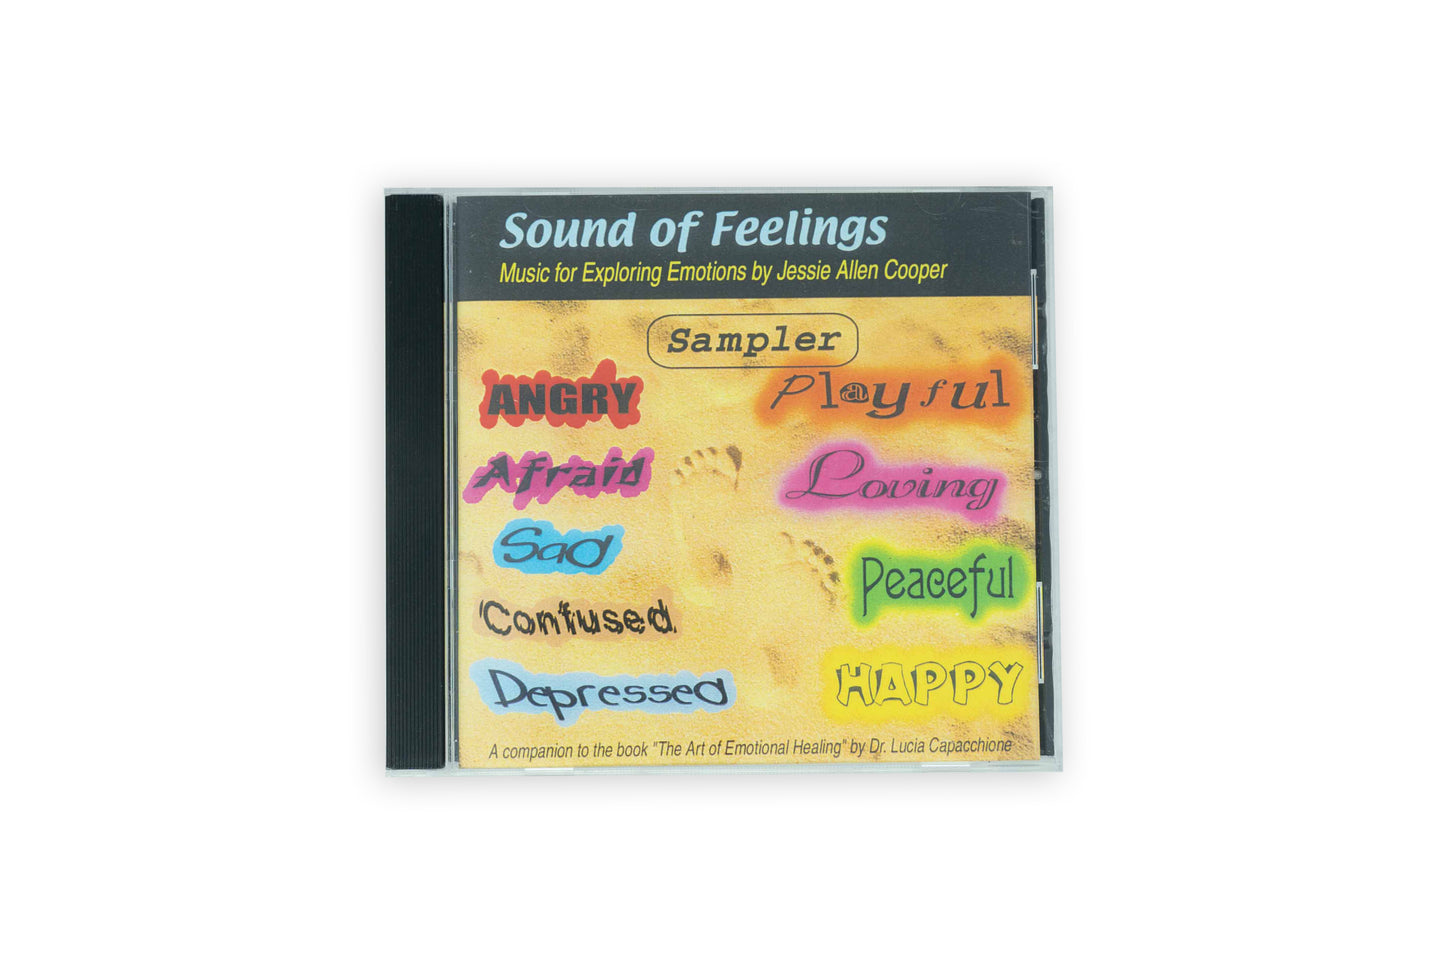 Sound of Feeling Sampler - CD